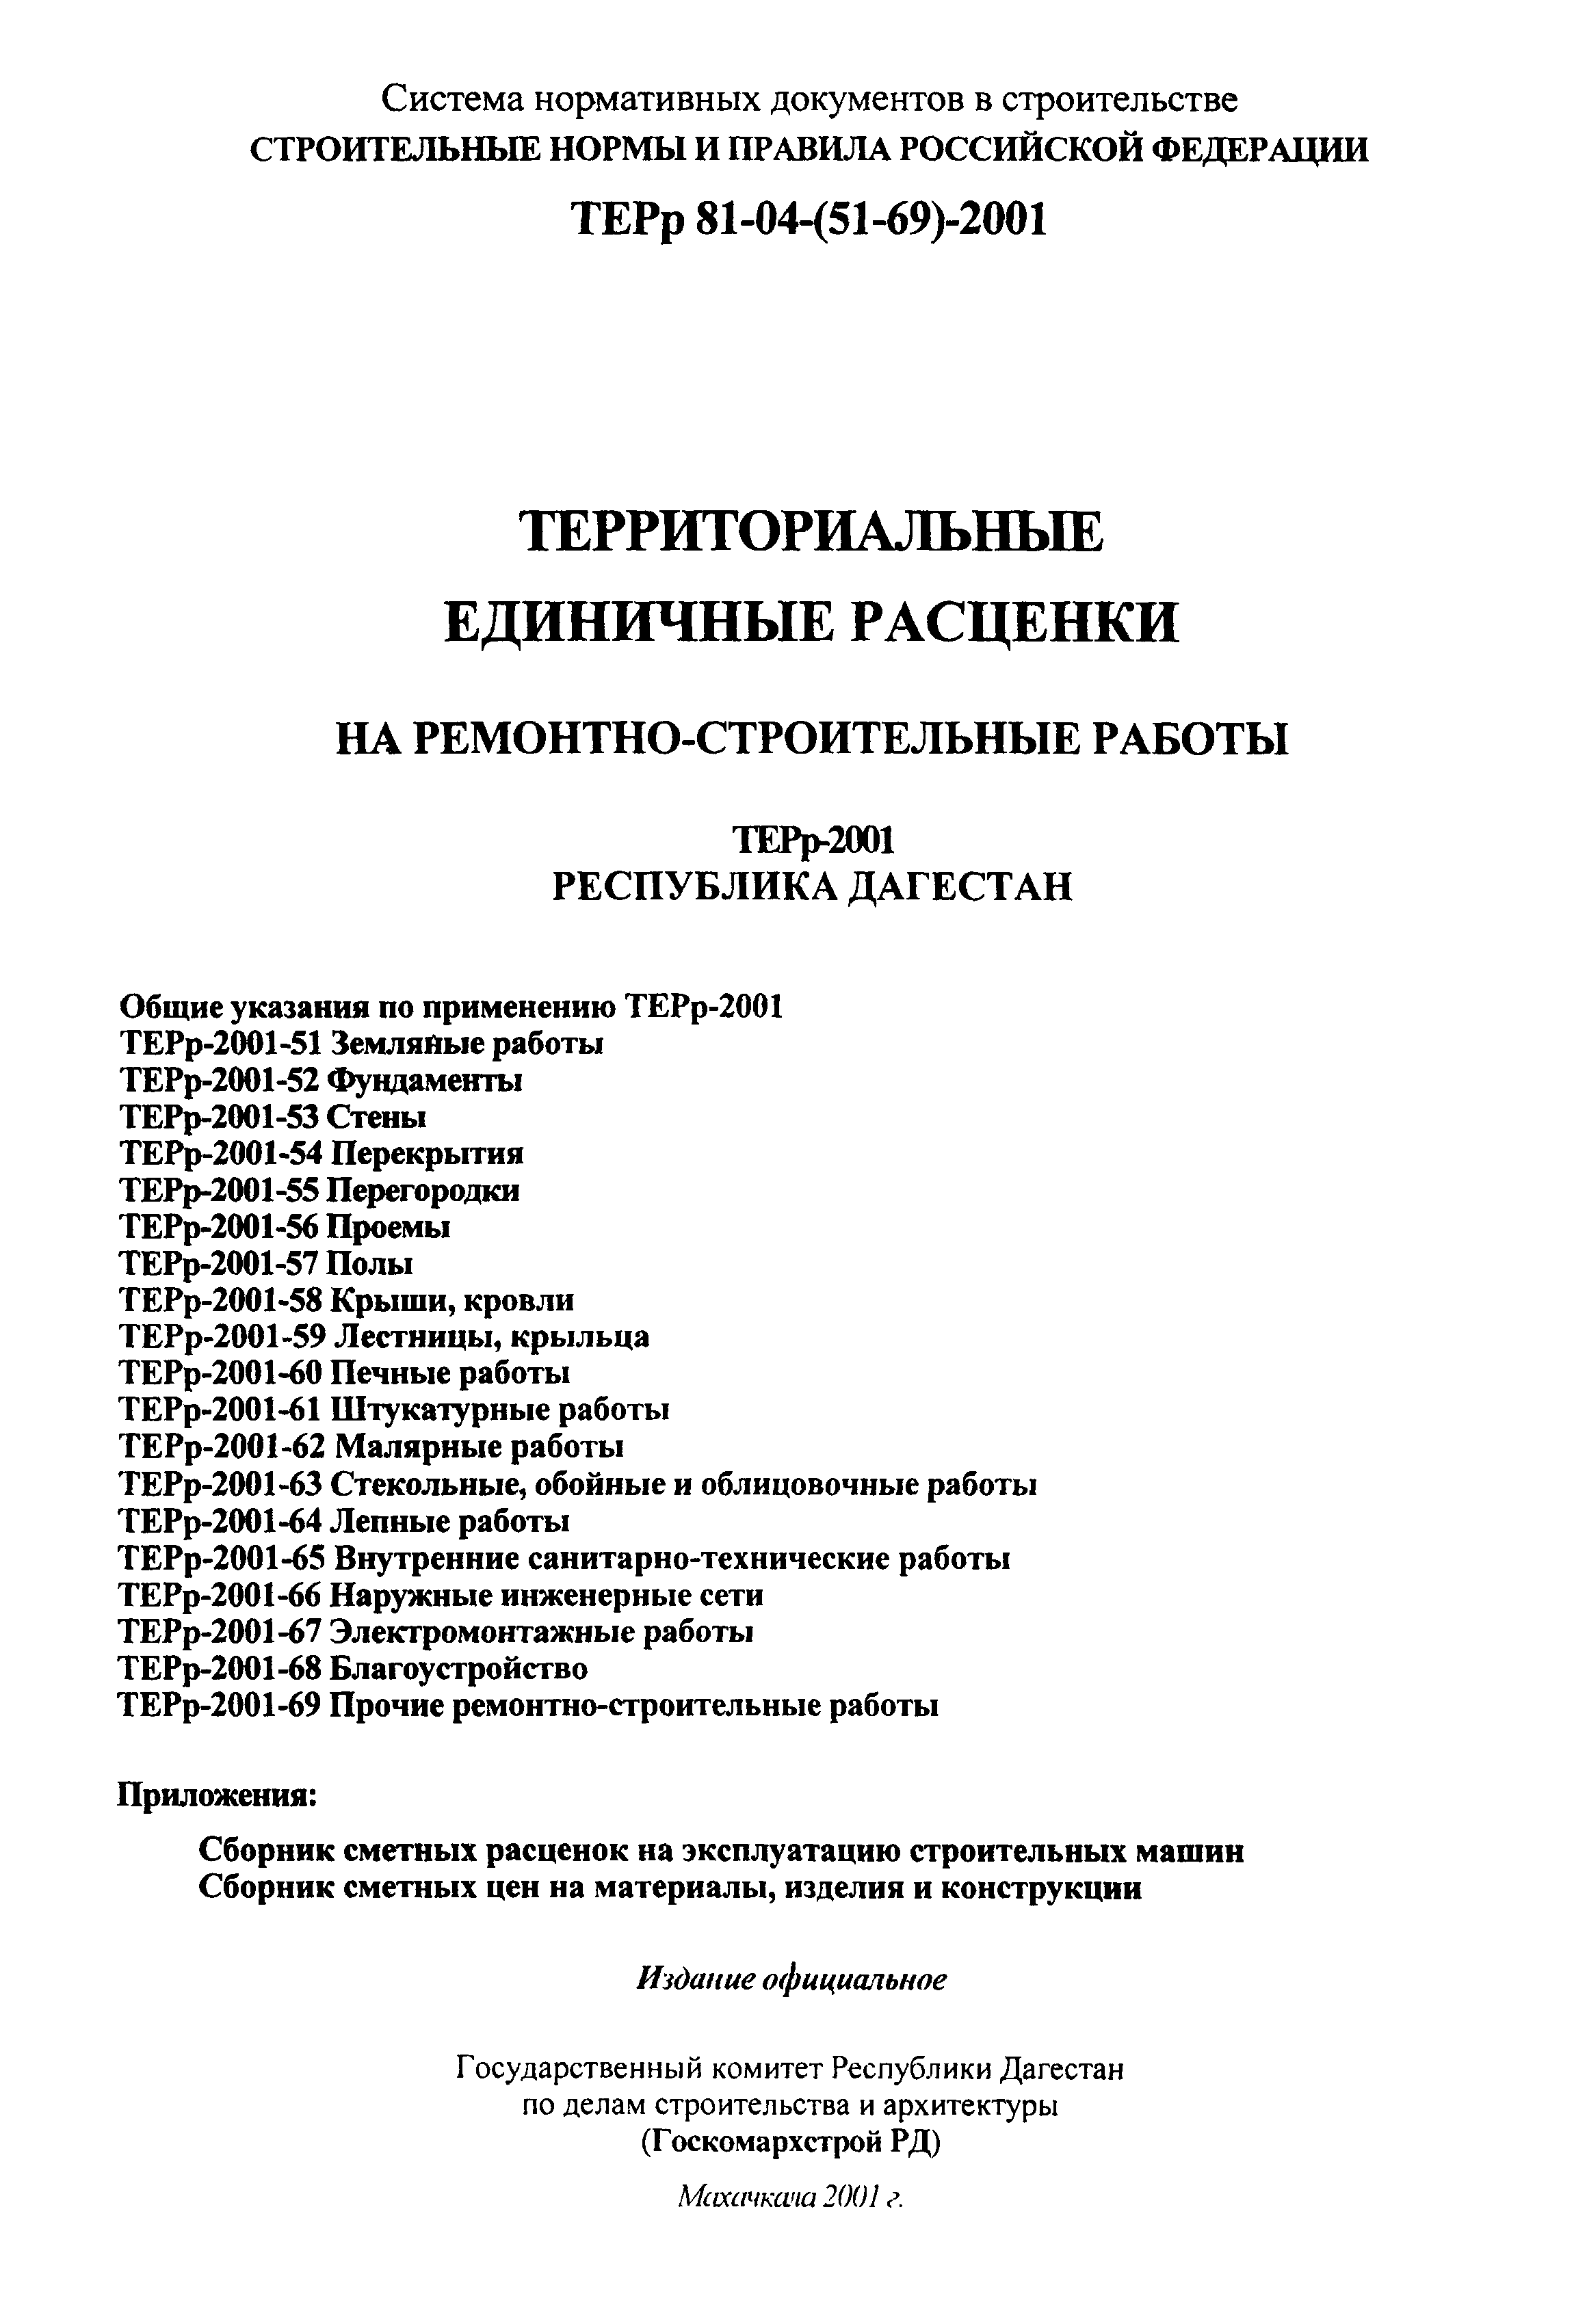 ТЕРр Республика Дагестан 2001-55